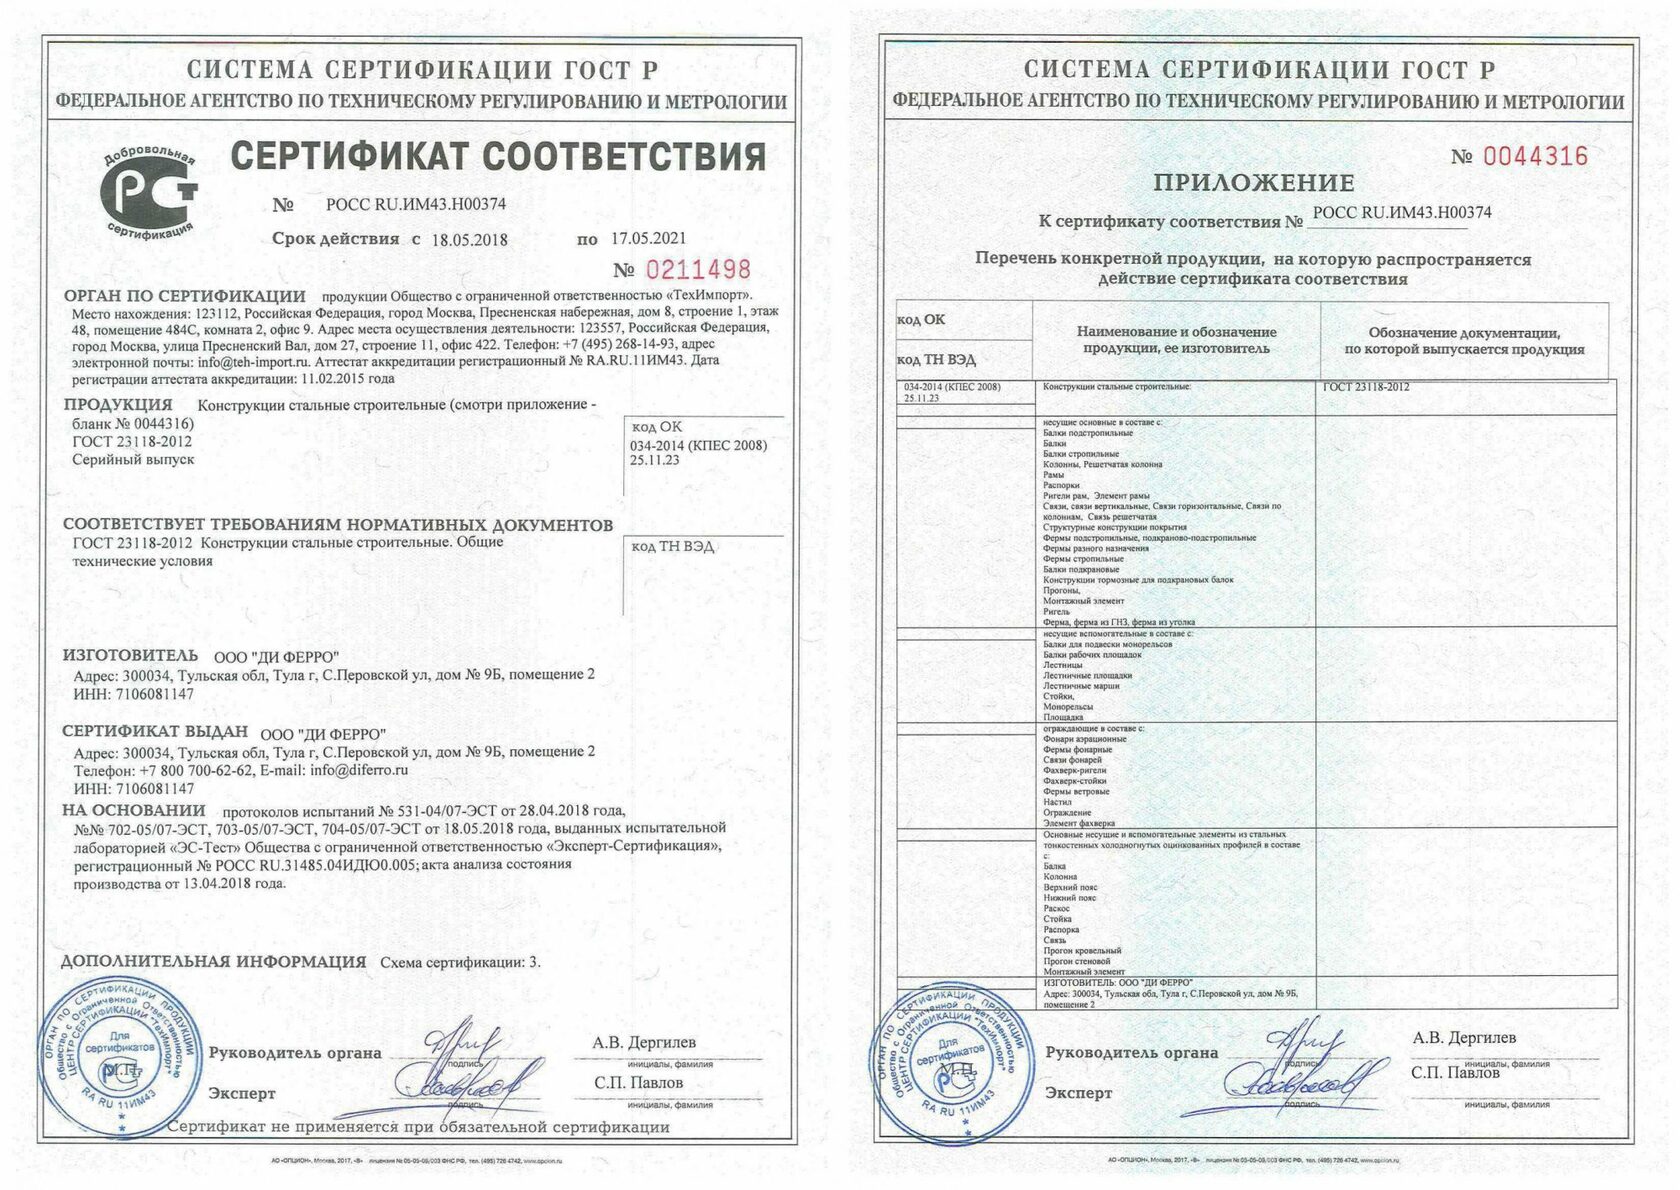 сертификат соответствия на медицинскую мебель